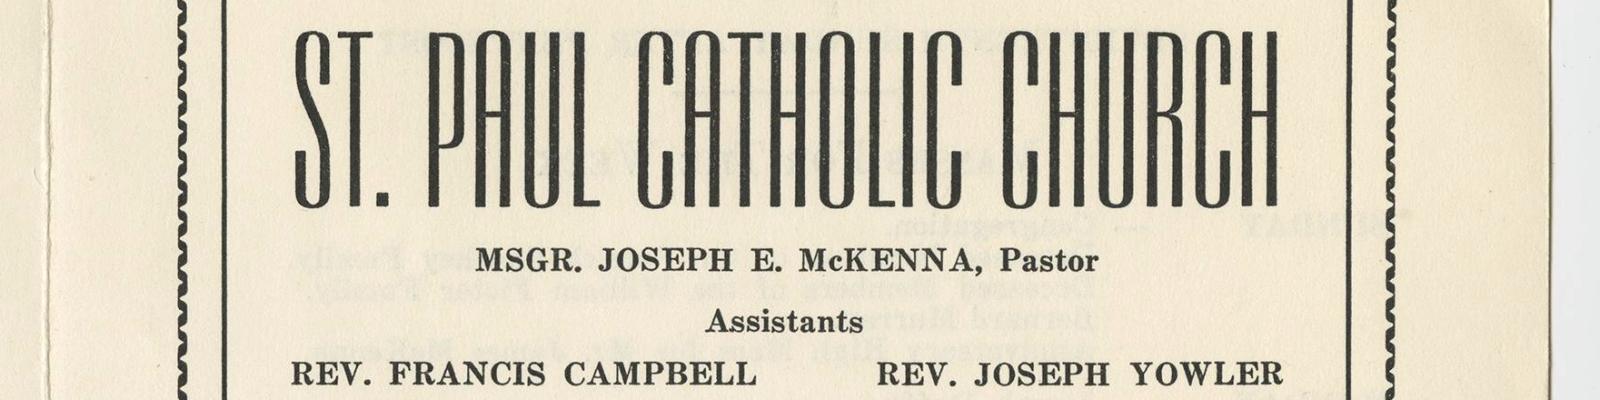 st paul catholic church bulletin 1957